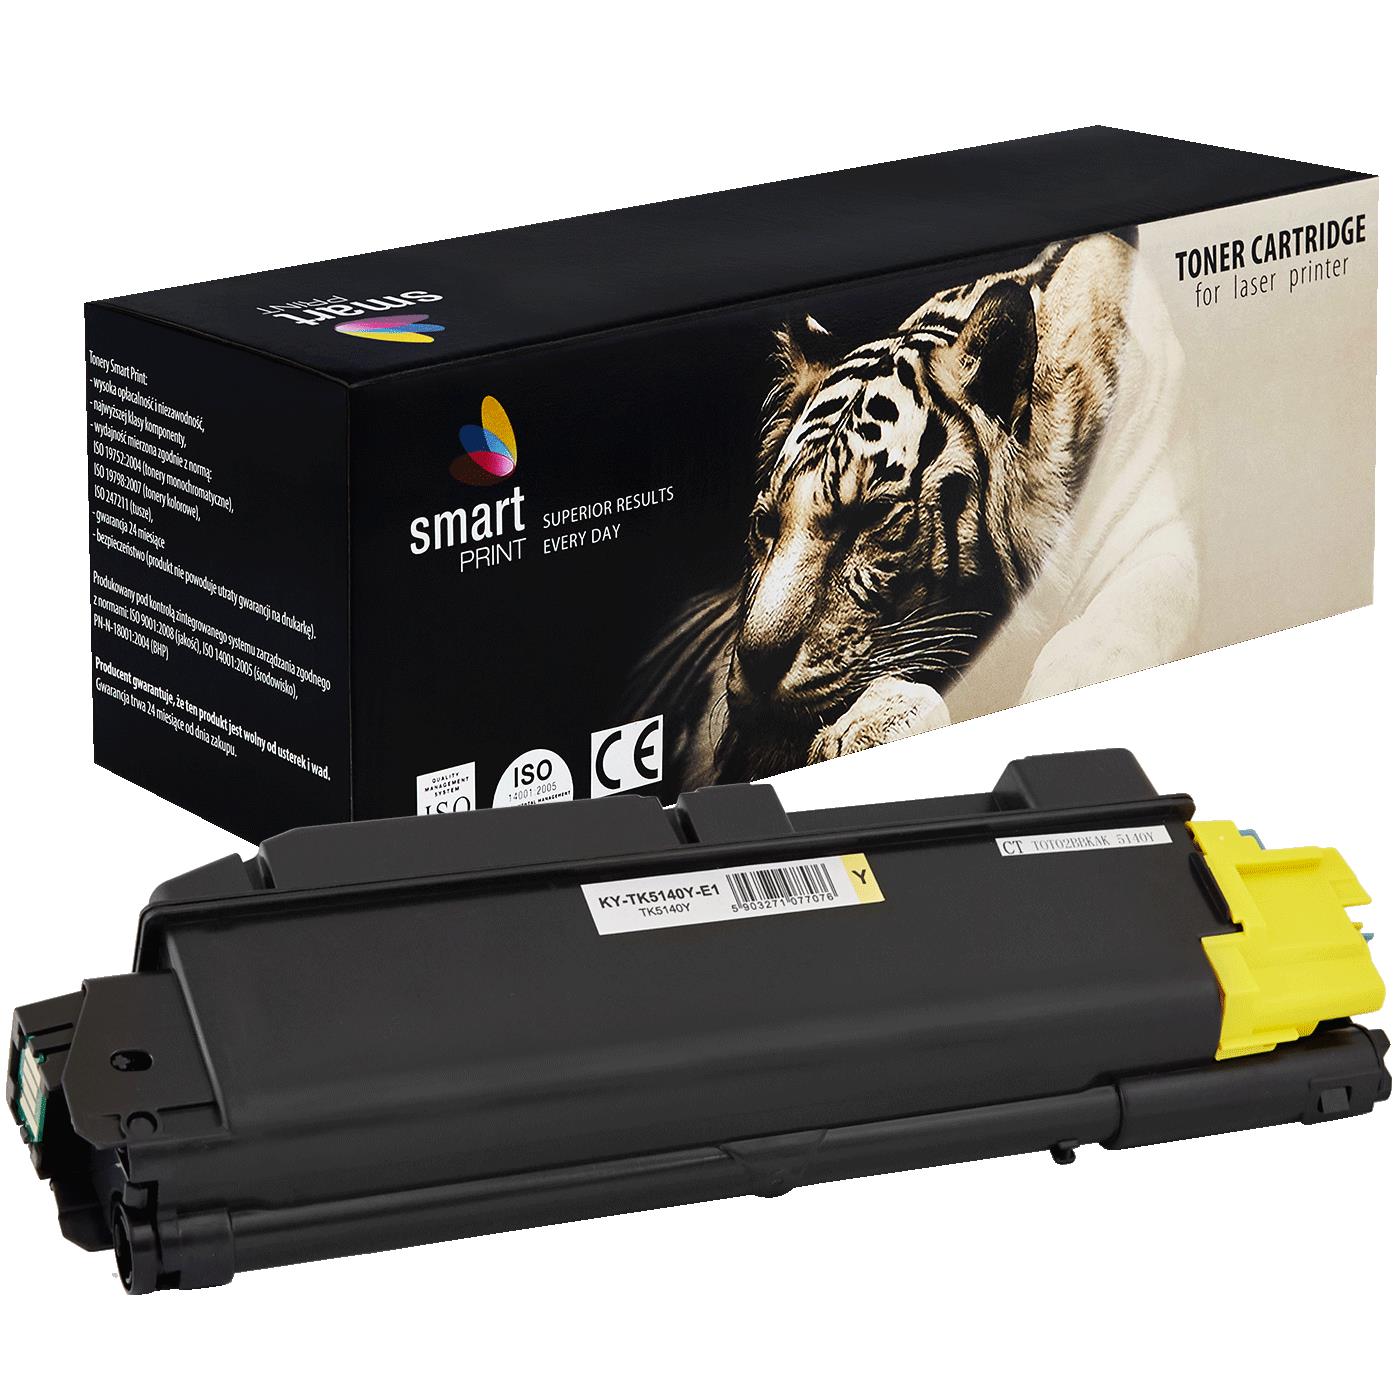 съвместима тонер касета за принтери и печатащи устройства на Kyocera Mita Kyocera: M6030 CDN, M6530 CDN,  P6130 CDN,  new new Toner KY-TK5140Y | TK5140Y. Ниски цени, прецизно изпълнение, високо качество.